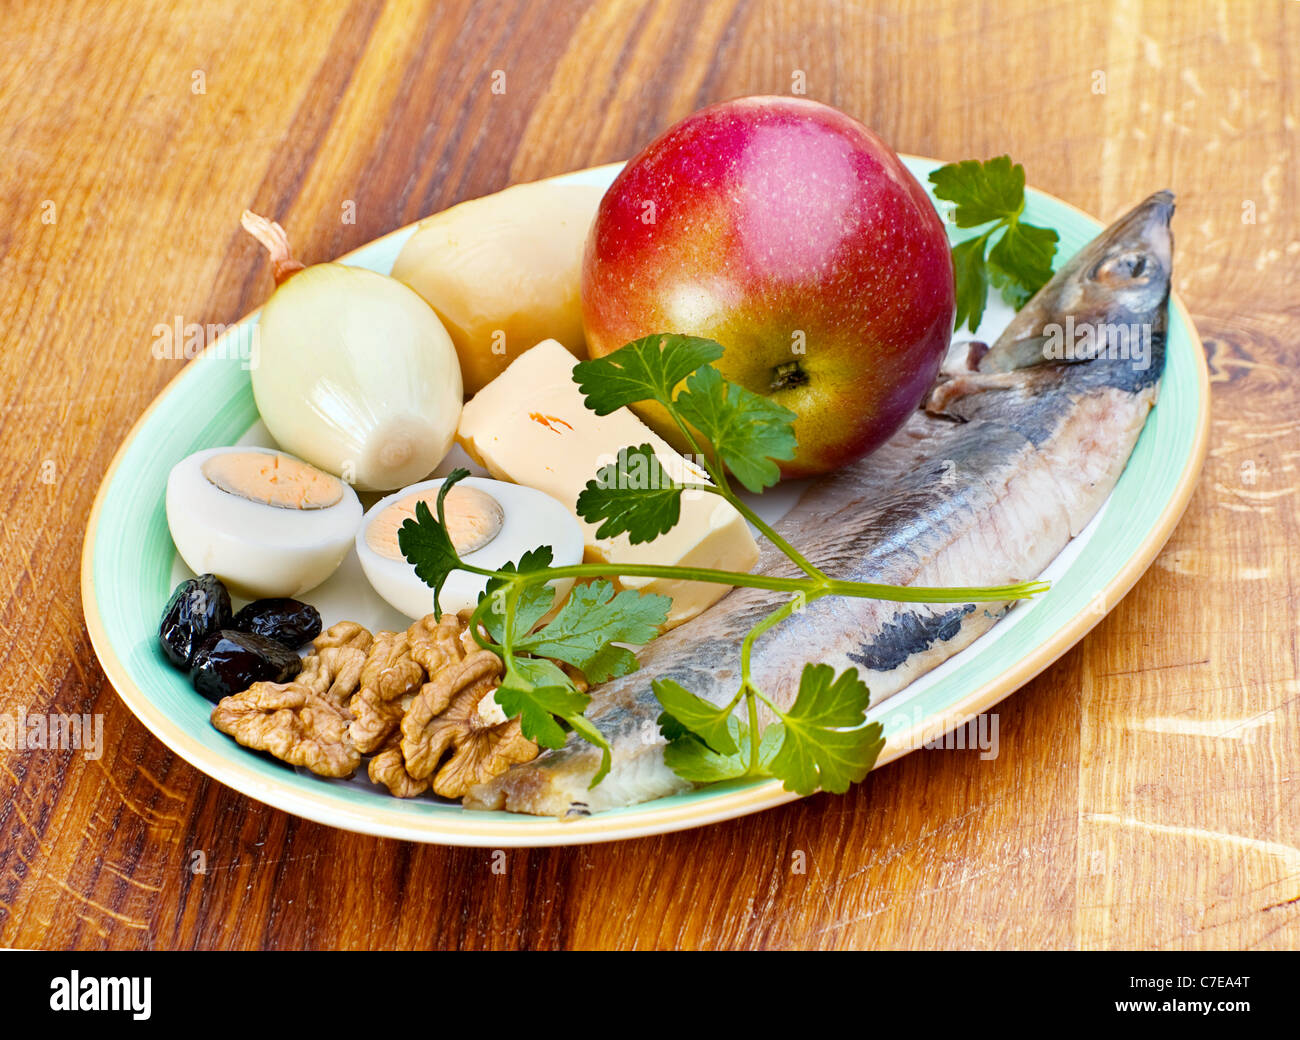 Oeuf, ingrédients pour la salade de hareng, pomme Banque D'Images